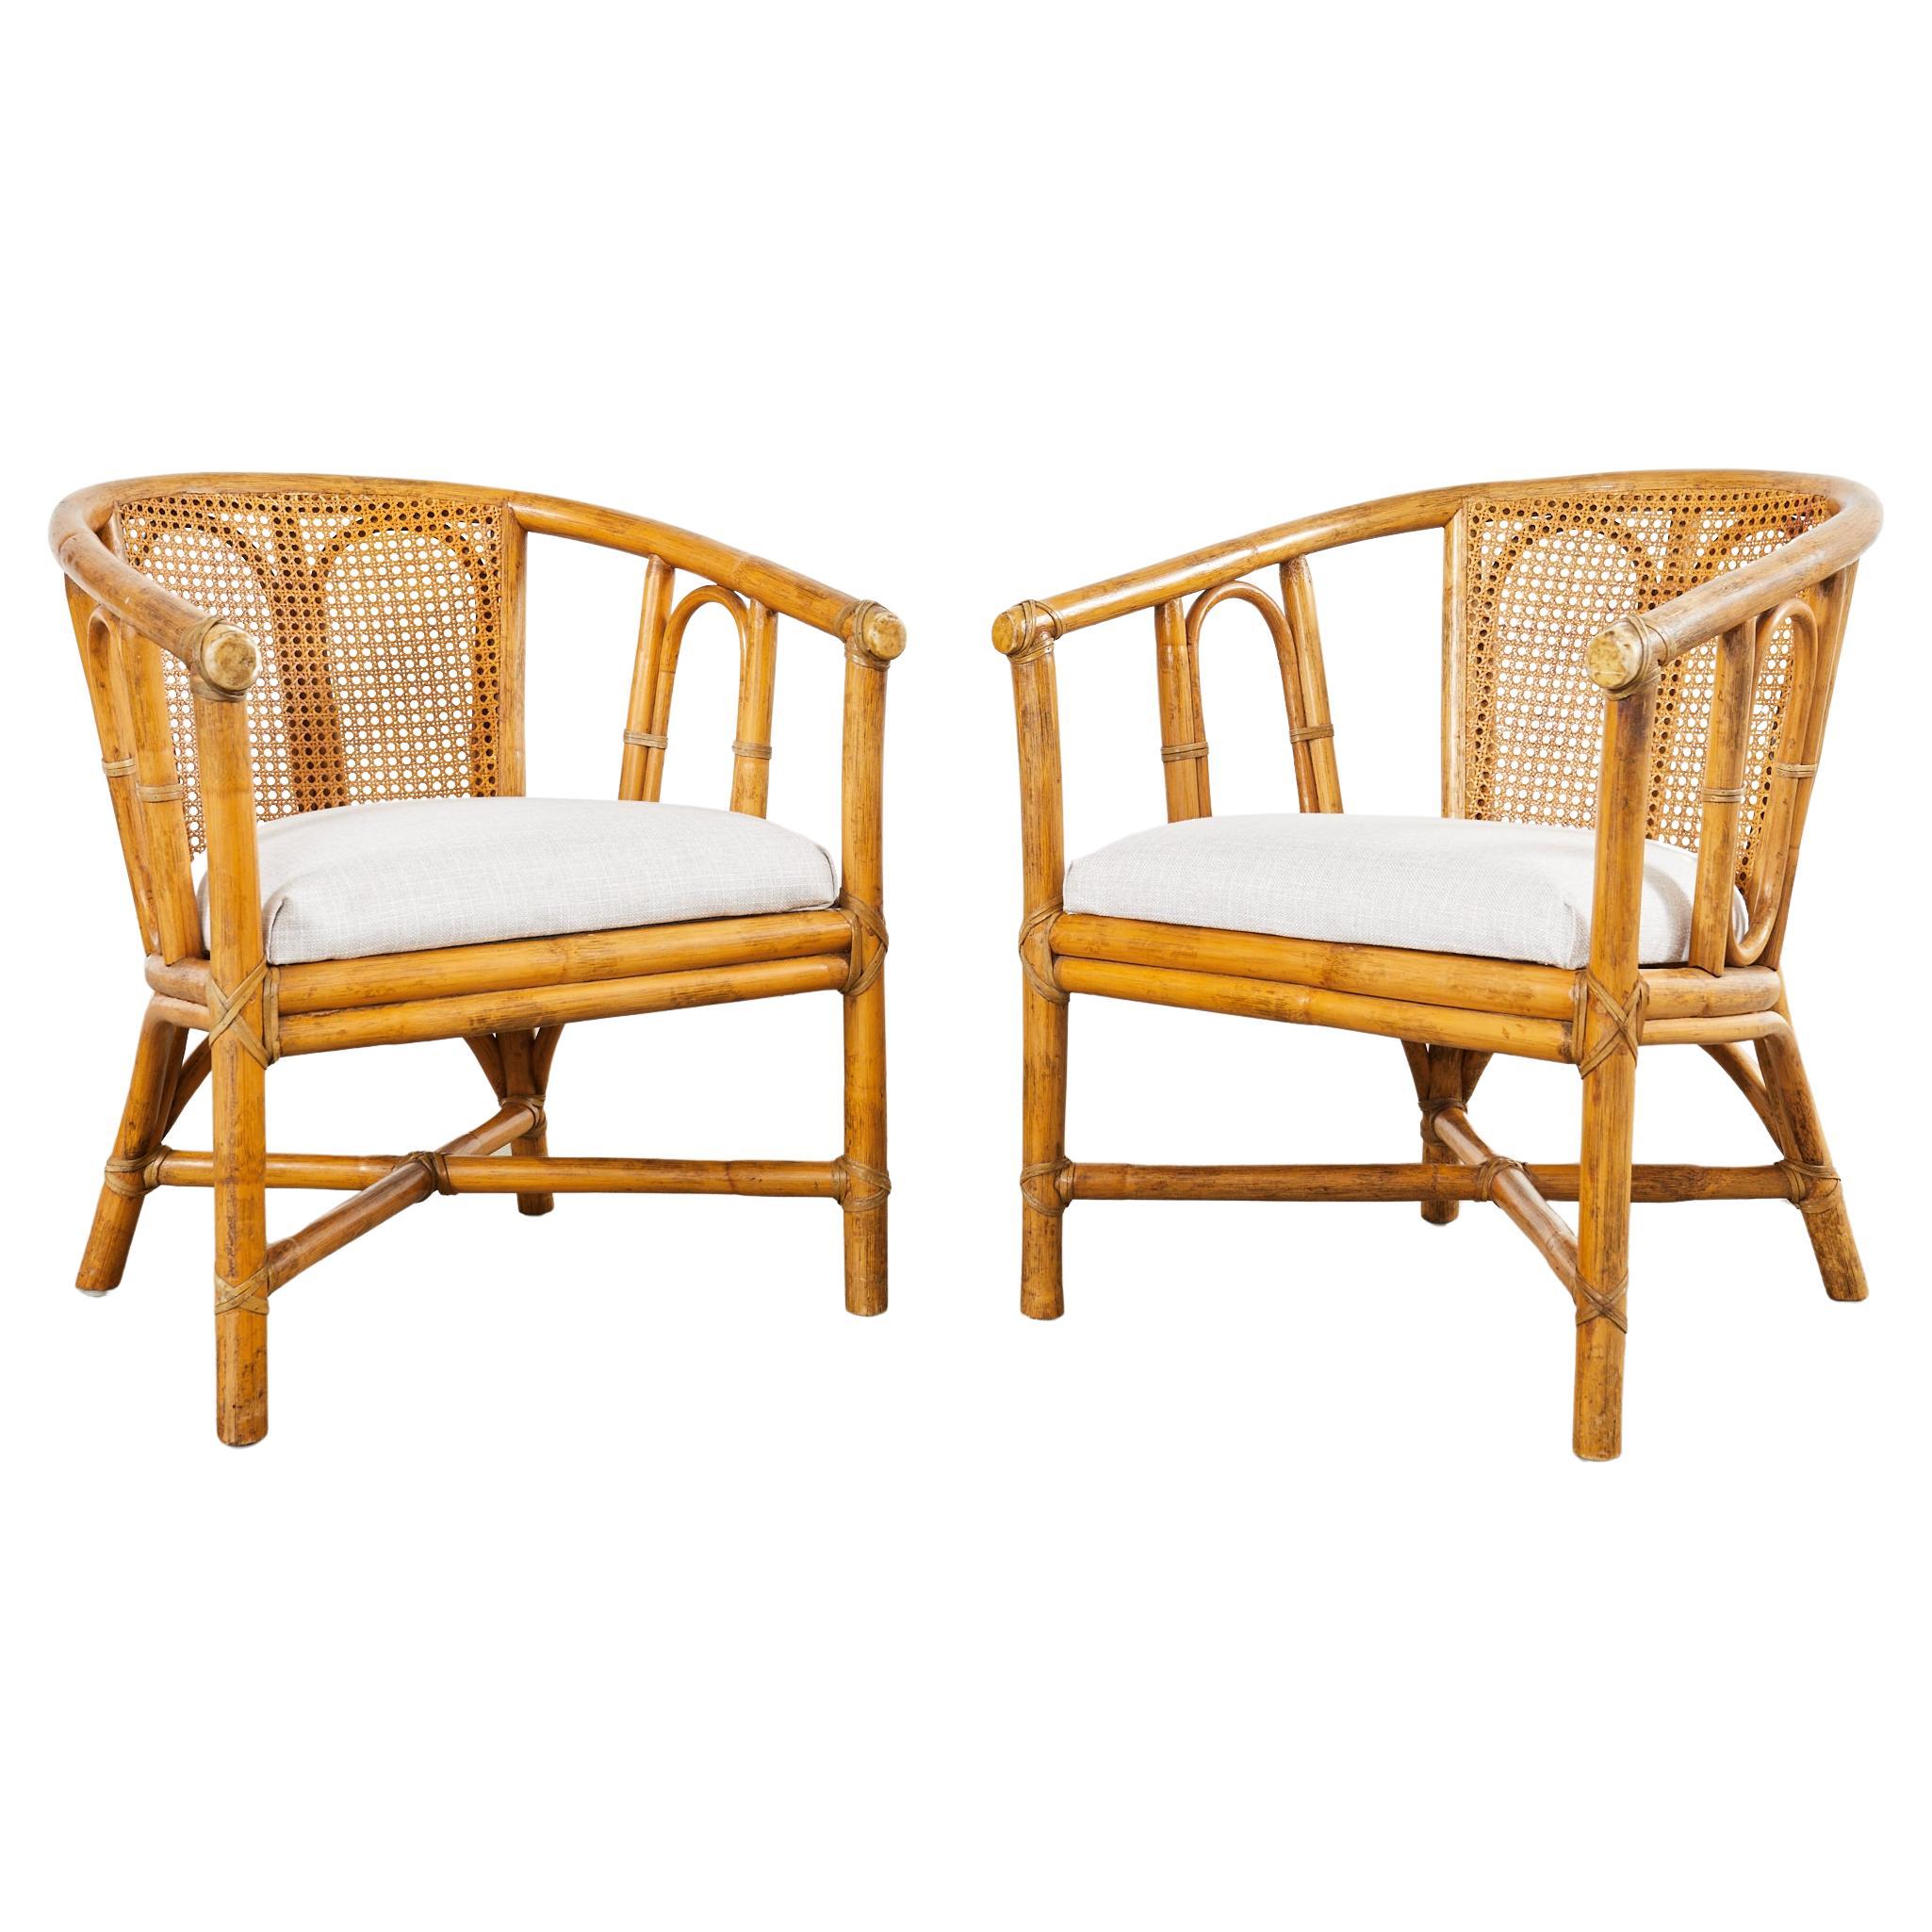 Paire de chaises longues en rotin Cane Barrel de style Modernity Organic